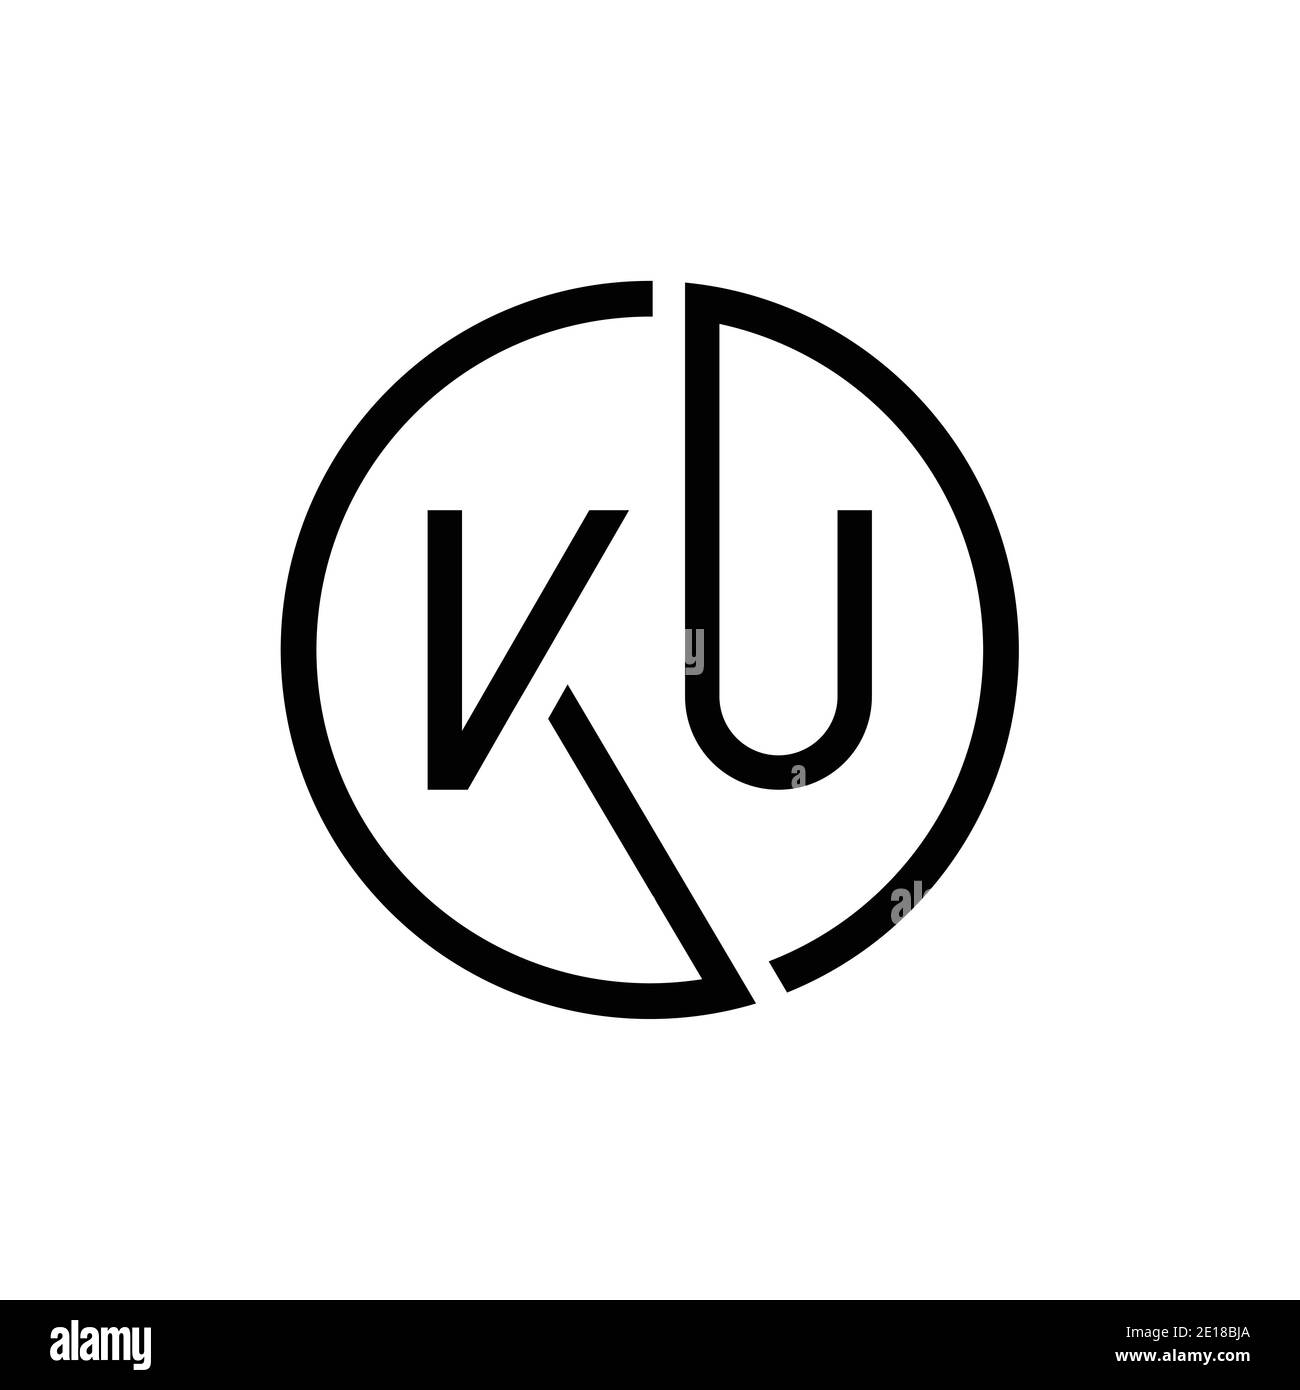 Modello vettoriale di progettazione logo KU con lettera collegata. Creative Circle KU minimal, disegno piatto con logo, illustrazione vettoriale Illustrazione Vettoriale